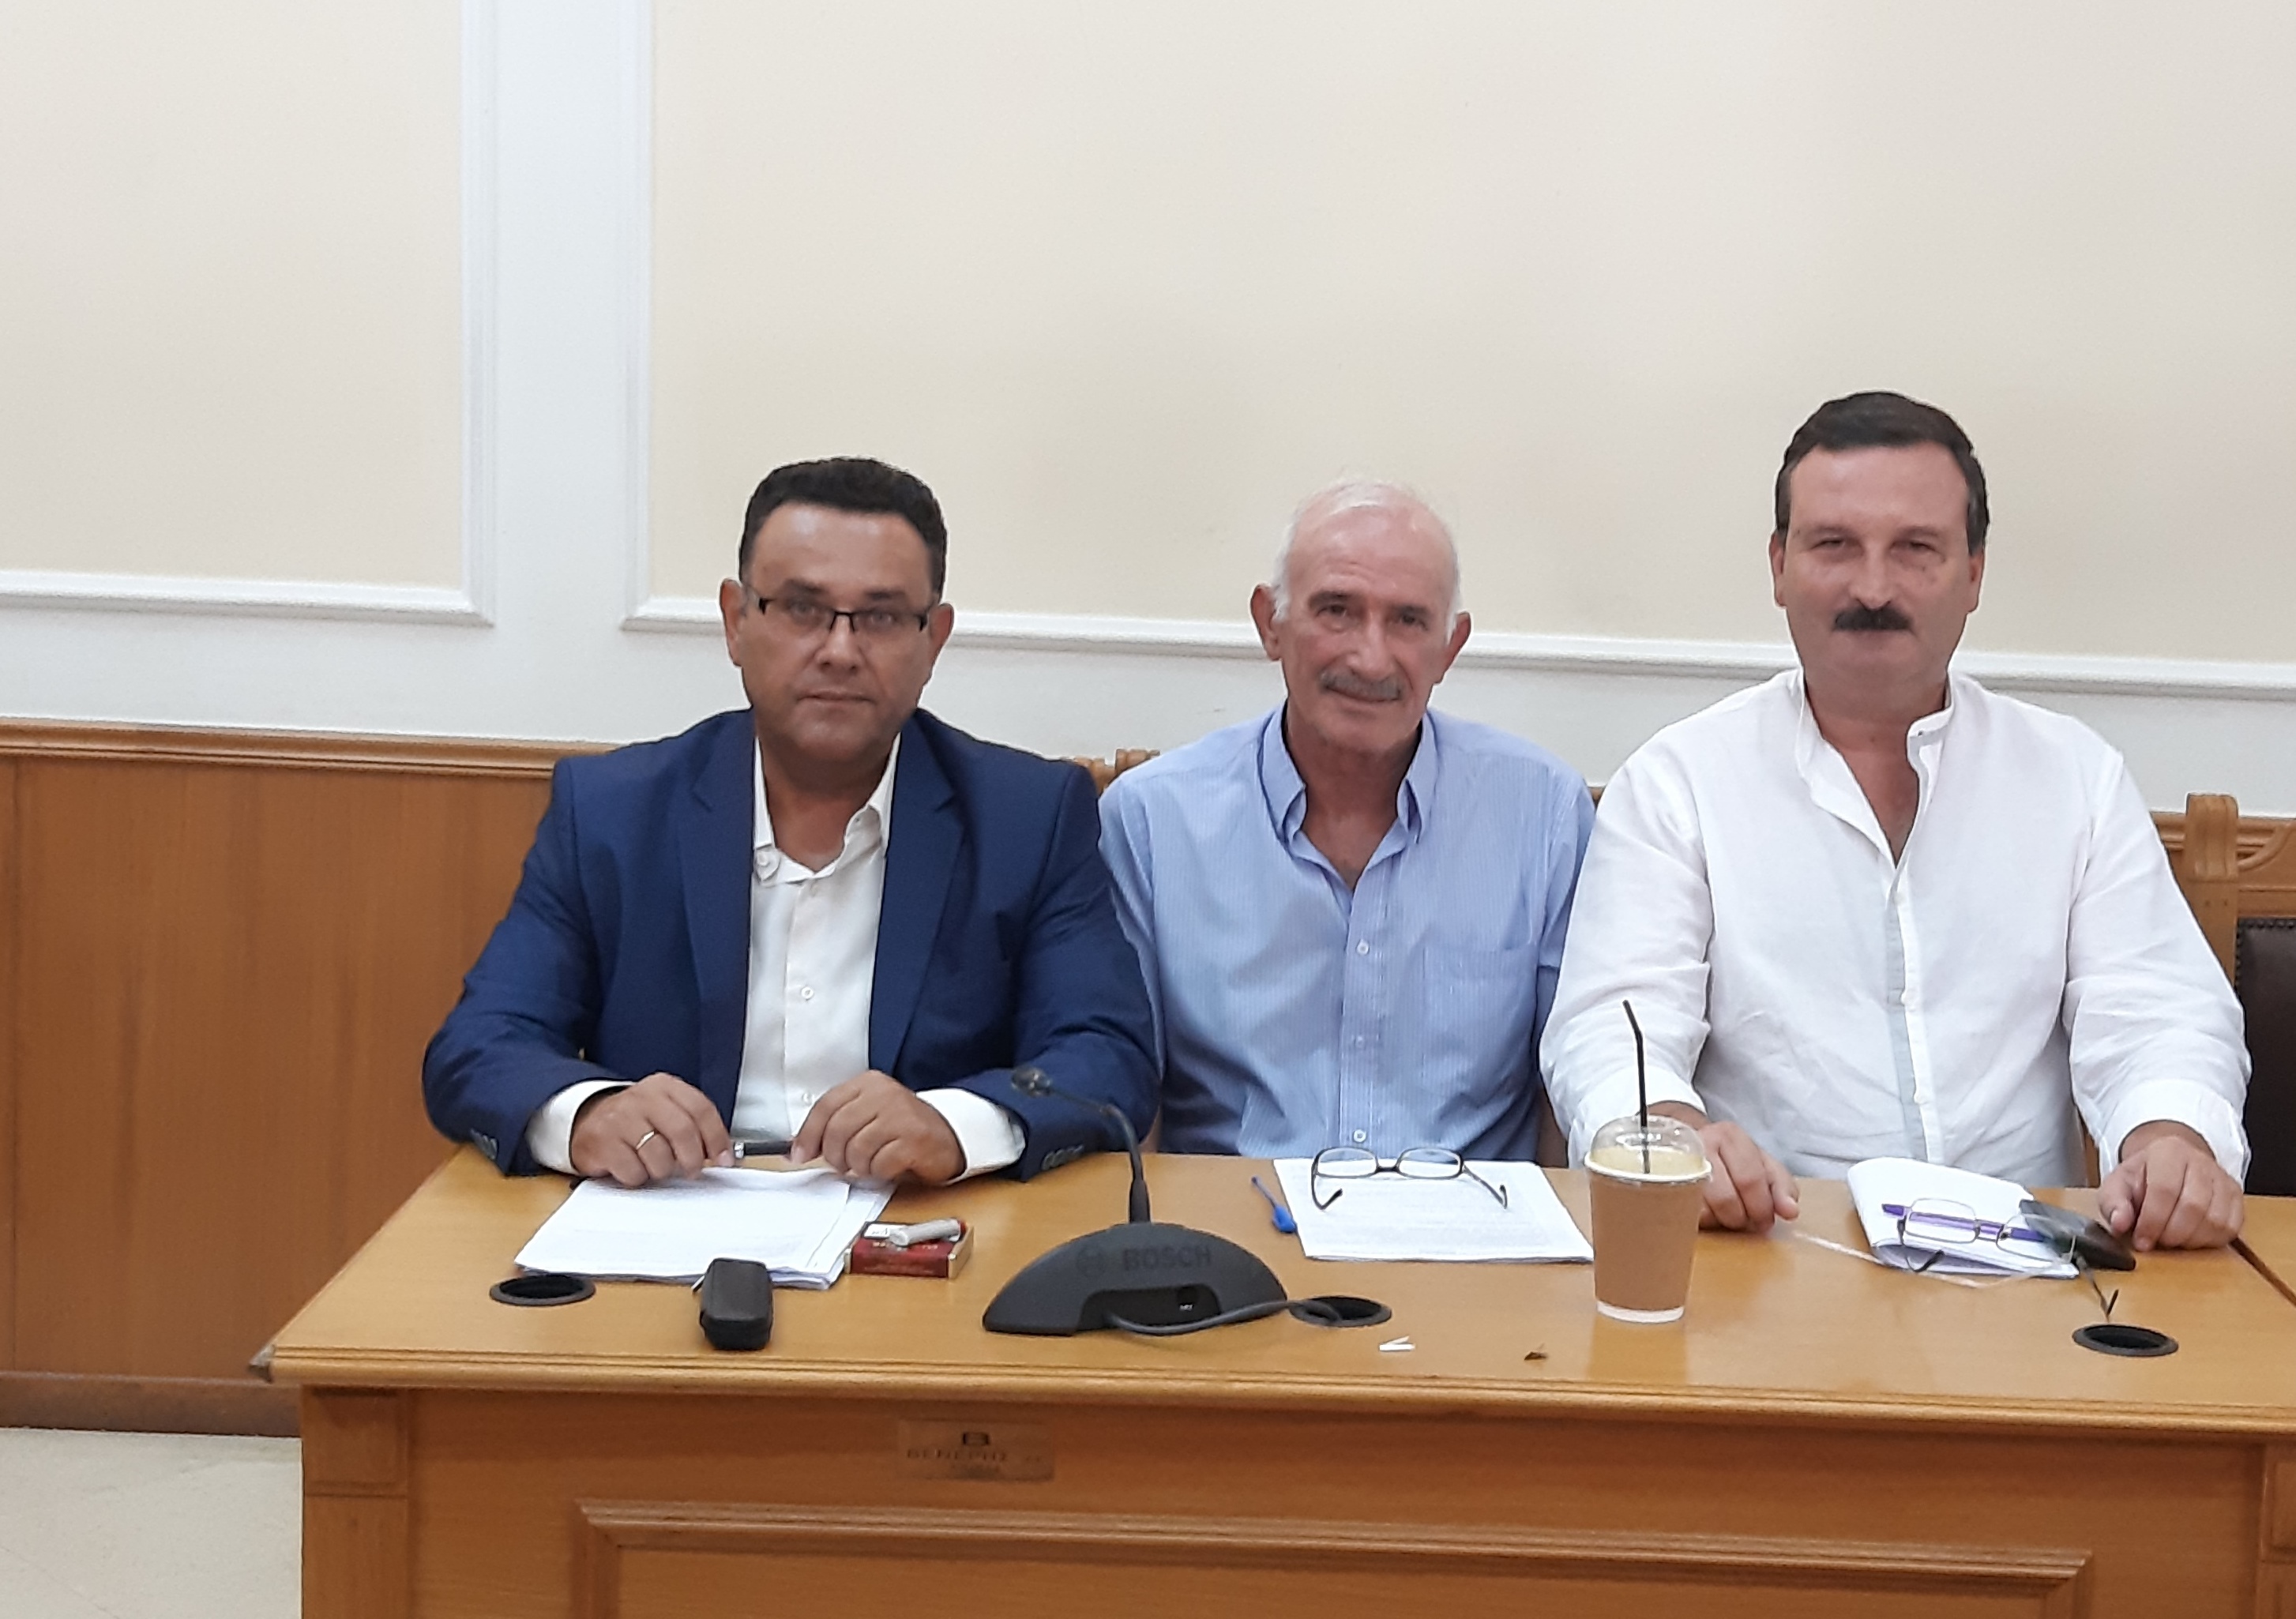 Μ. Συντυχάκης: Οι θέσεις της Λαϊκής Συσπείρωσης στο Περιφερειακό Συμβούλιο Κρήτης